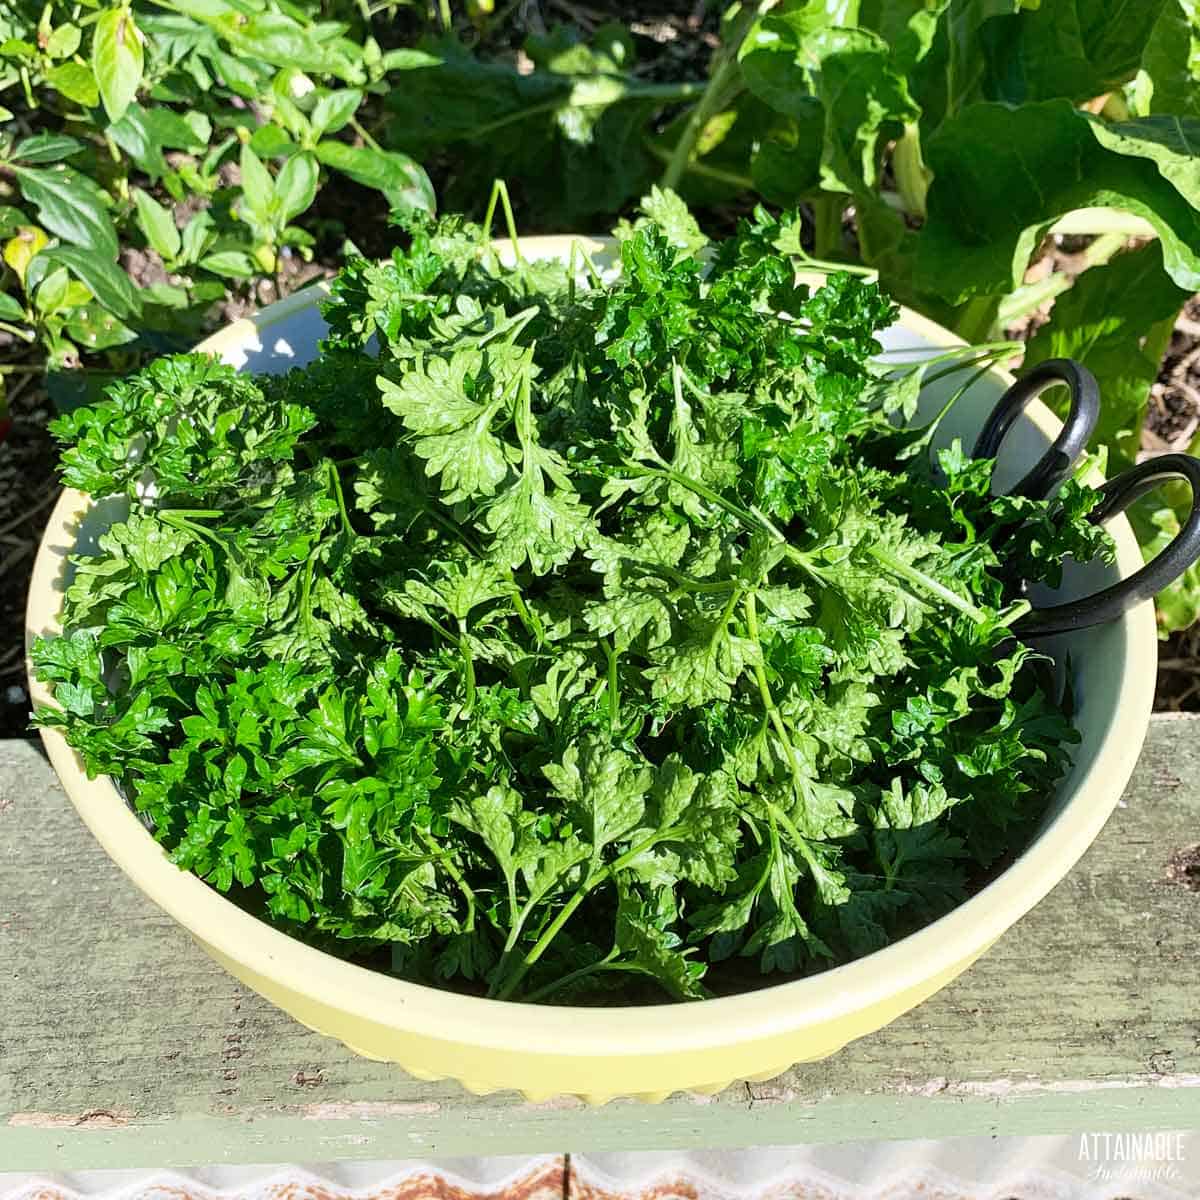 bowl full of freshly harvested parsley.